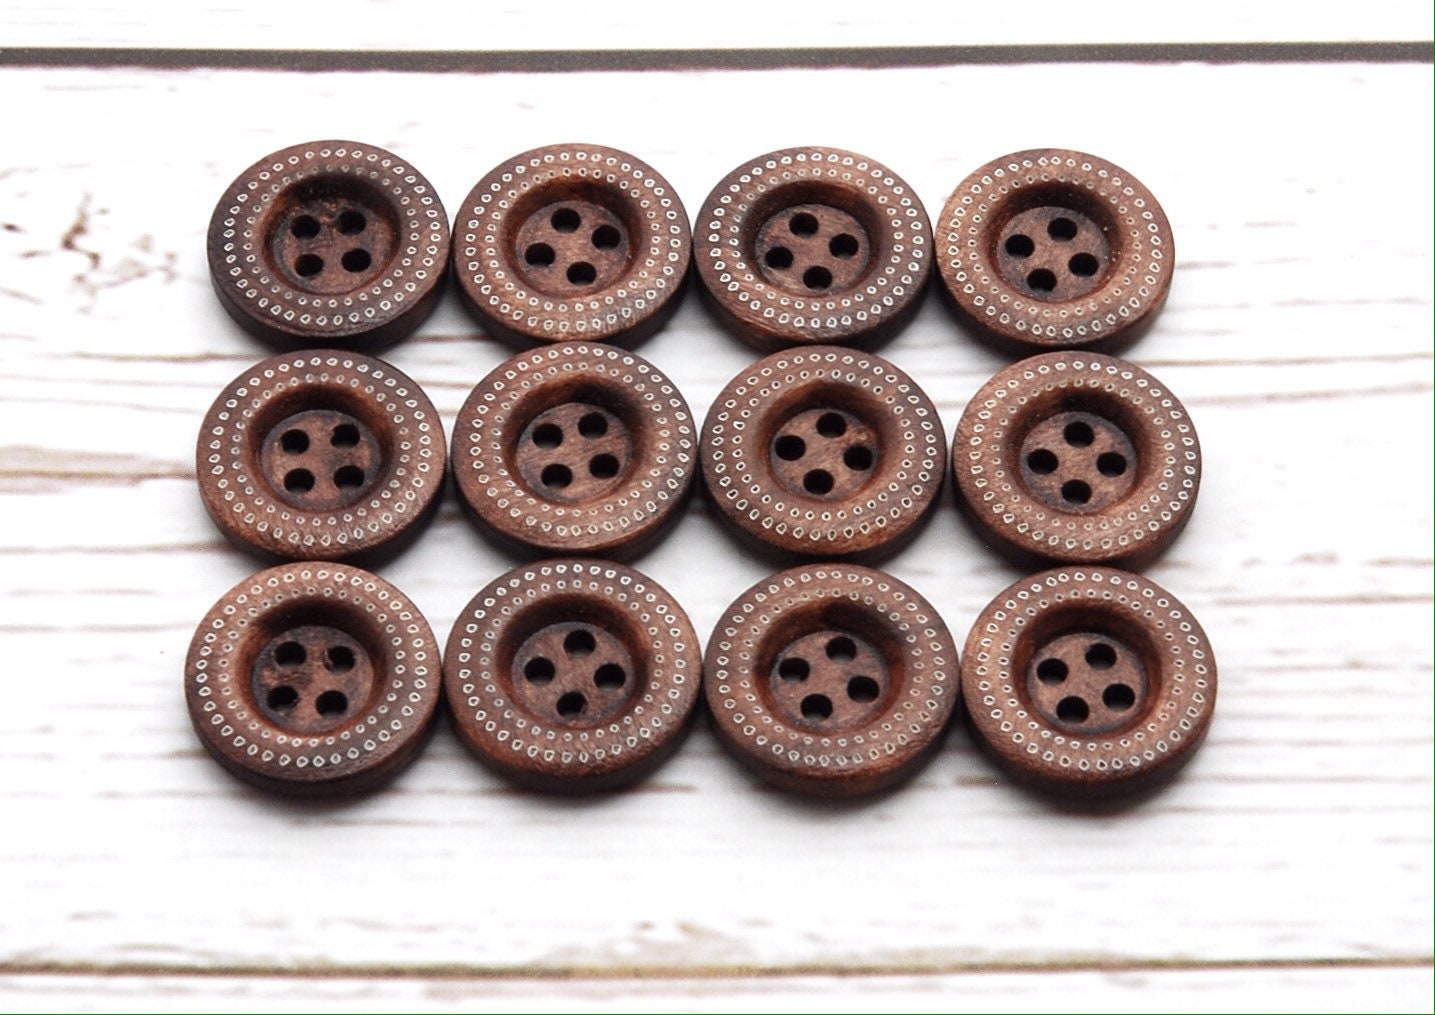 18mm.Vintage Wood Buttons Brown Color 2 Holes Circle Buttons design Set 24 pcs 